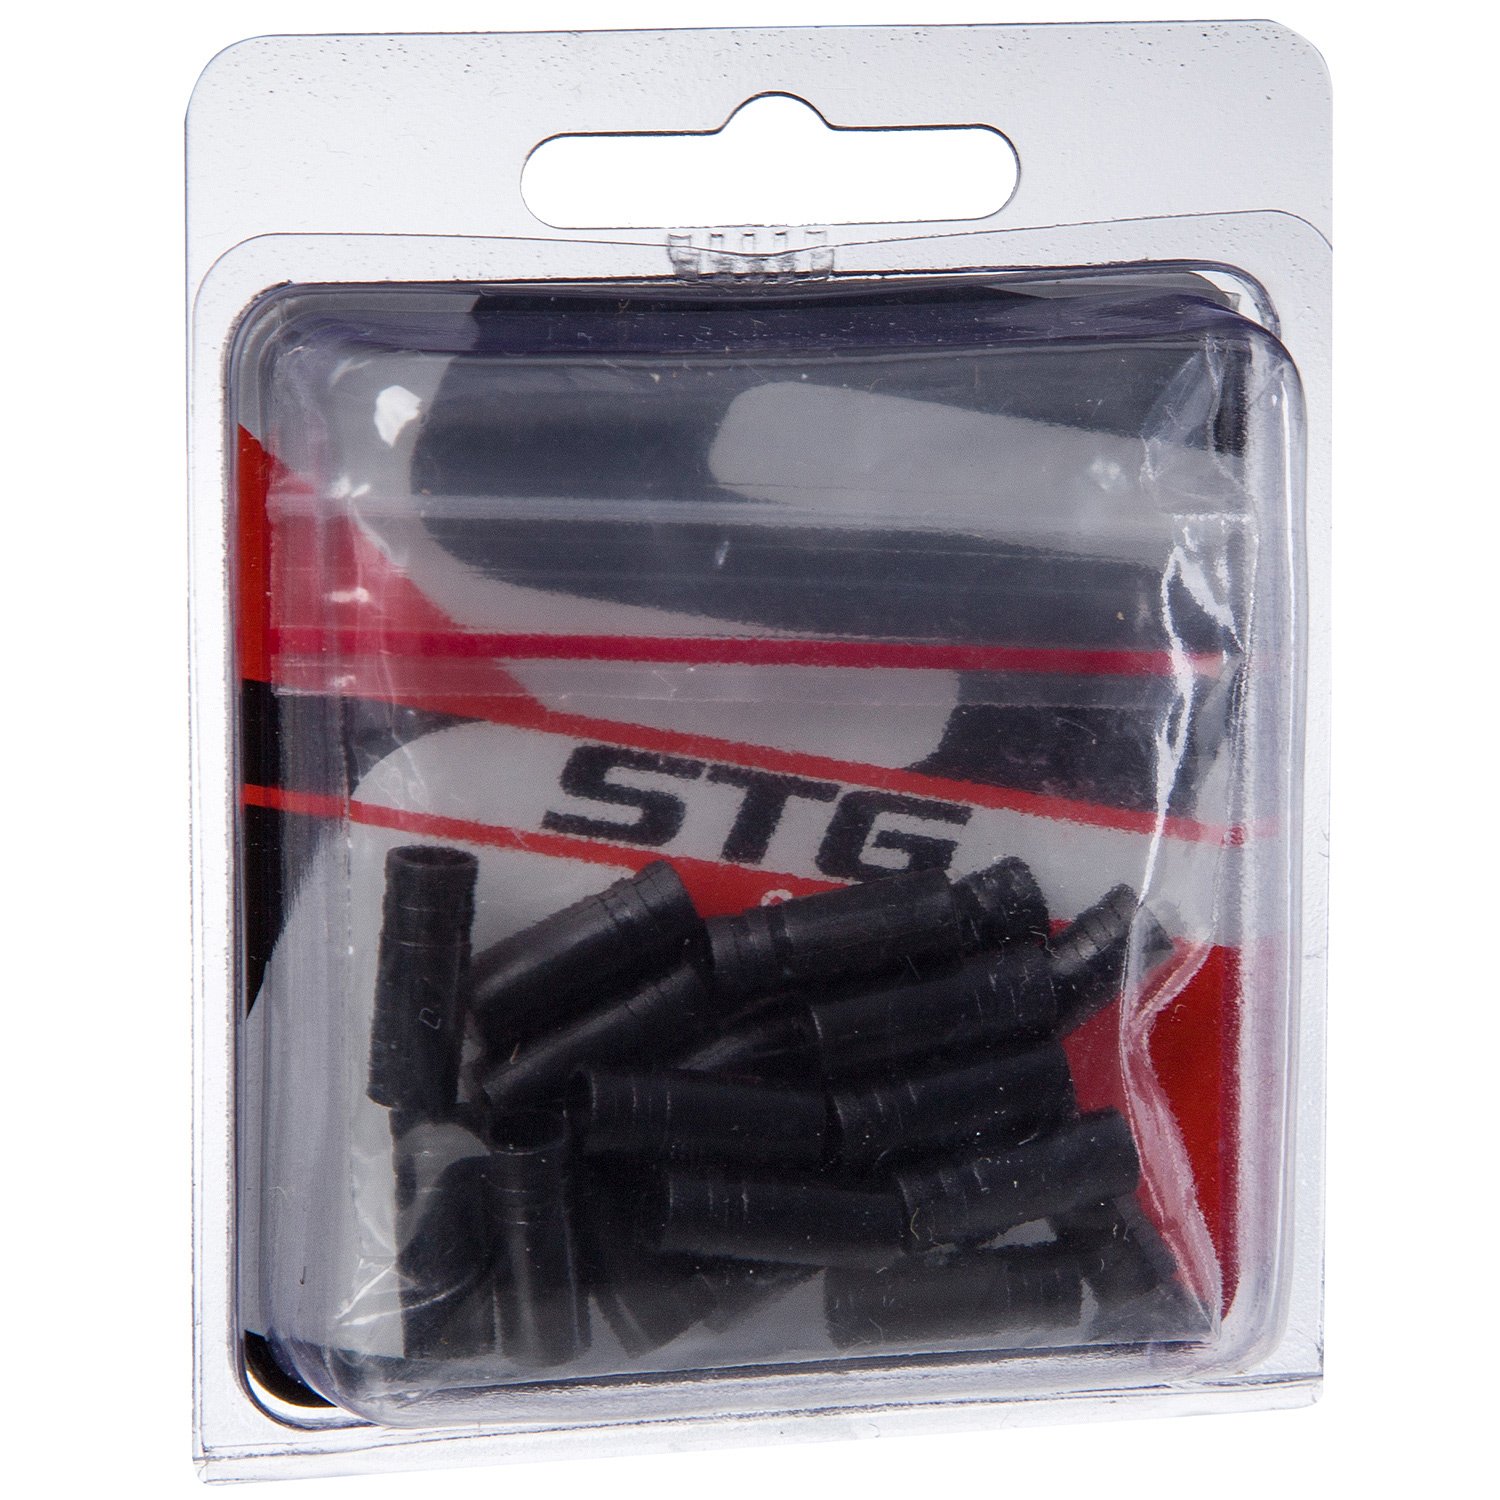 Наконечник тормозной оплетки STG YZ-16003SE, пластик, 4 мм, 20 штук в упаковке, чёрный, Х90093 УТ-00278737 - фото 2